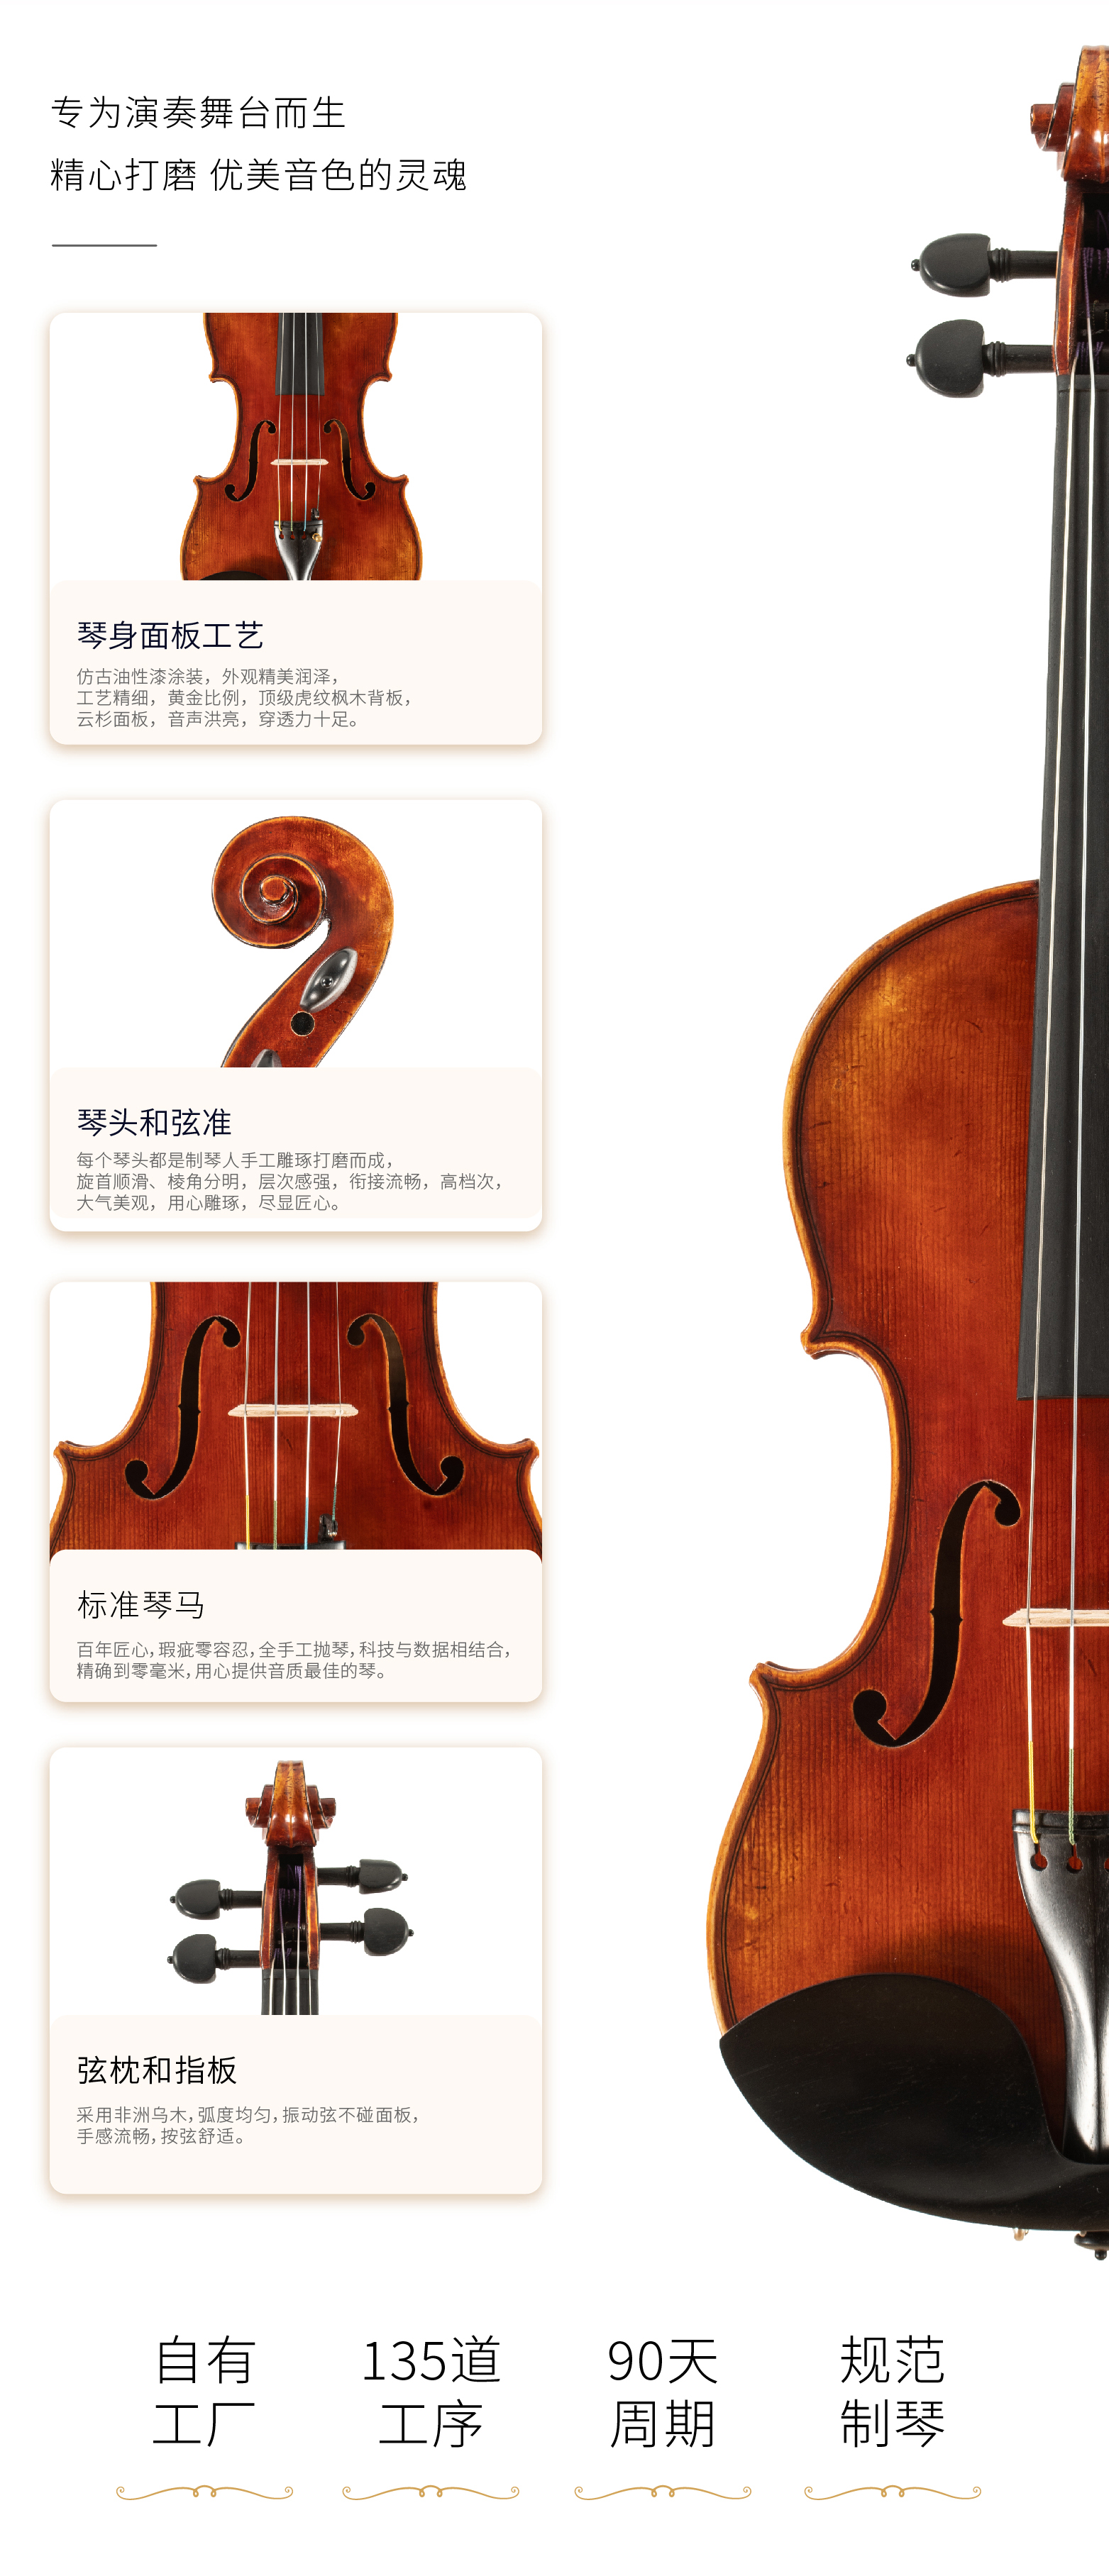 熙珑乐器专营店-详情-v1-2_SV680小提琴_07.jpg